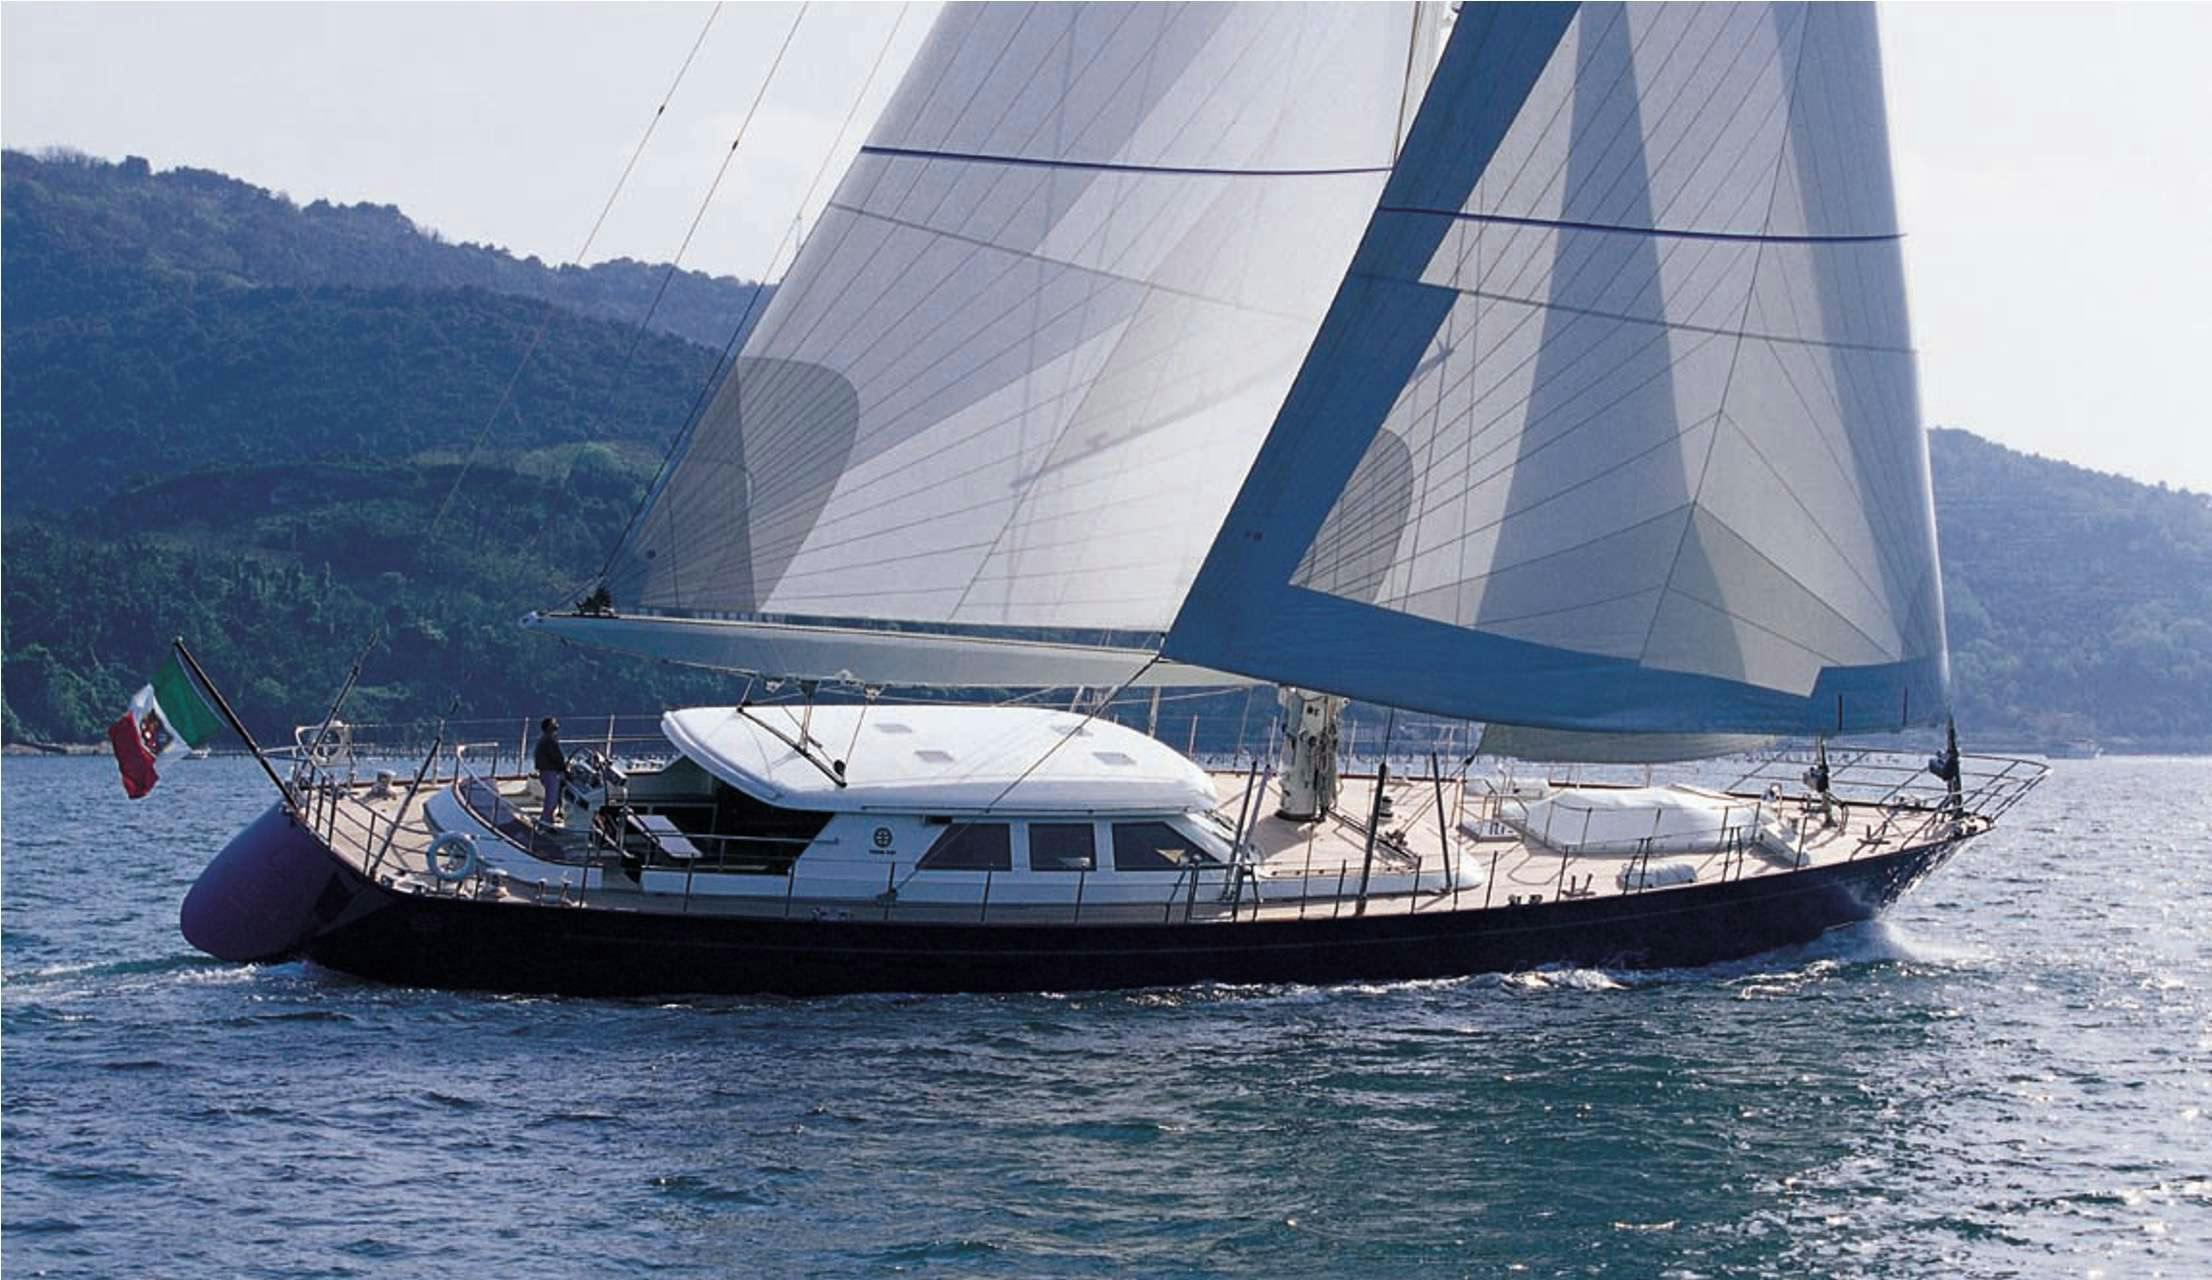 HERITAGE M - Yacht Charter Castiglioncello & Boat hire in Fr. Riviera & Tyrrhenian Sea 1